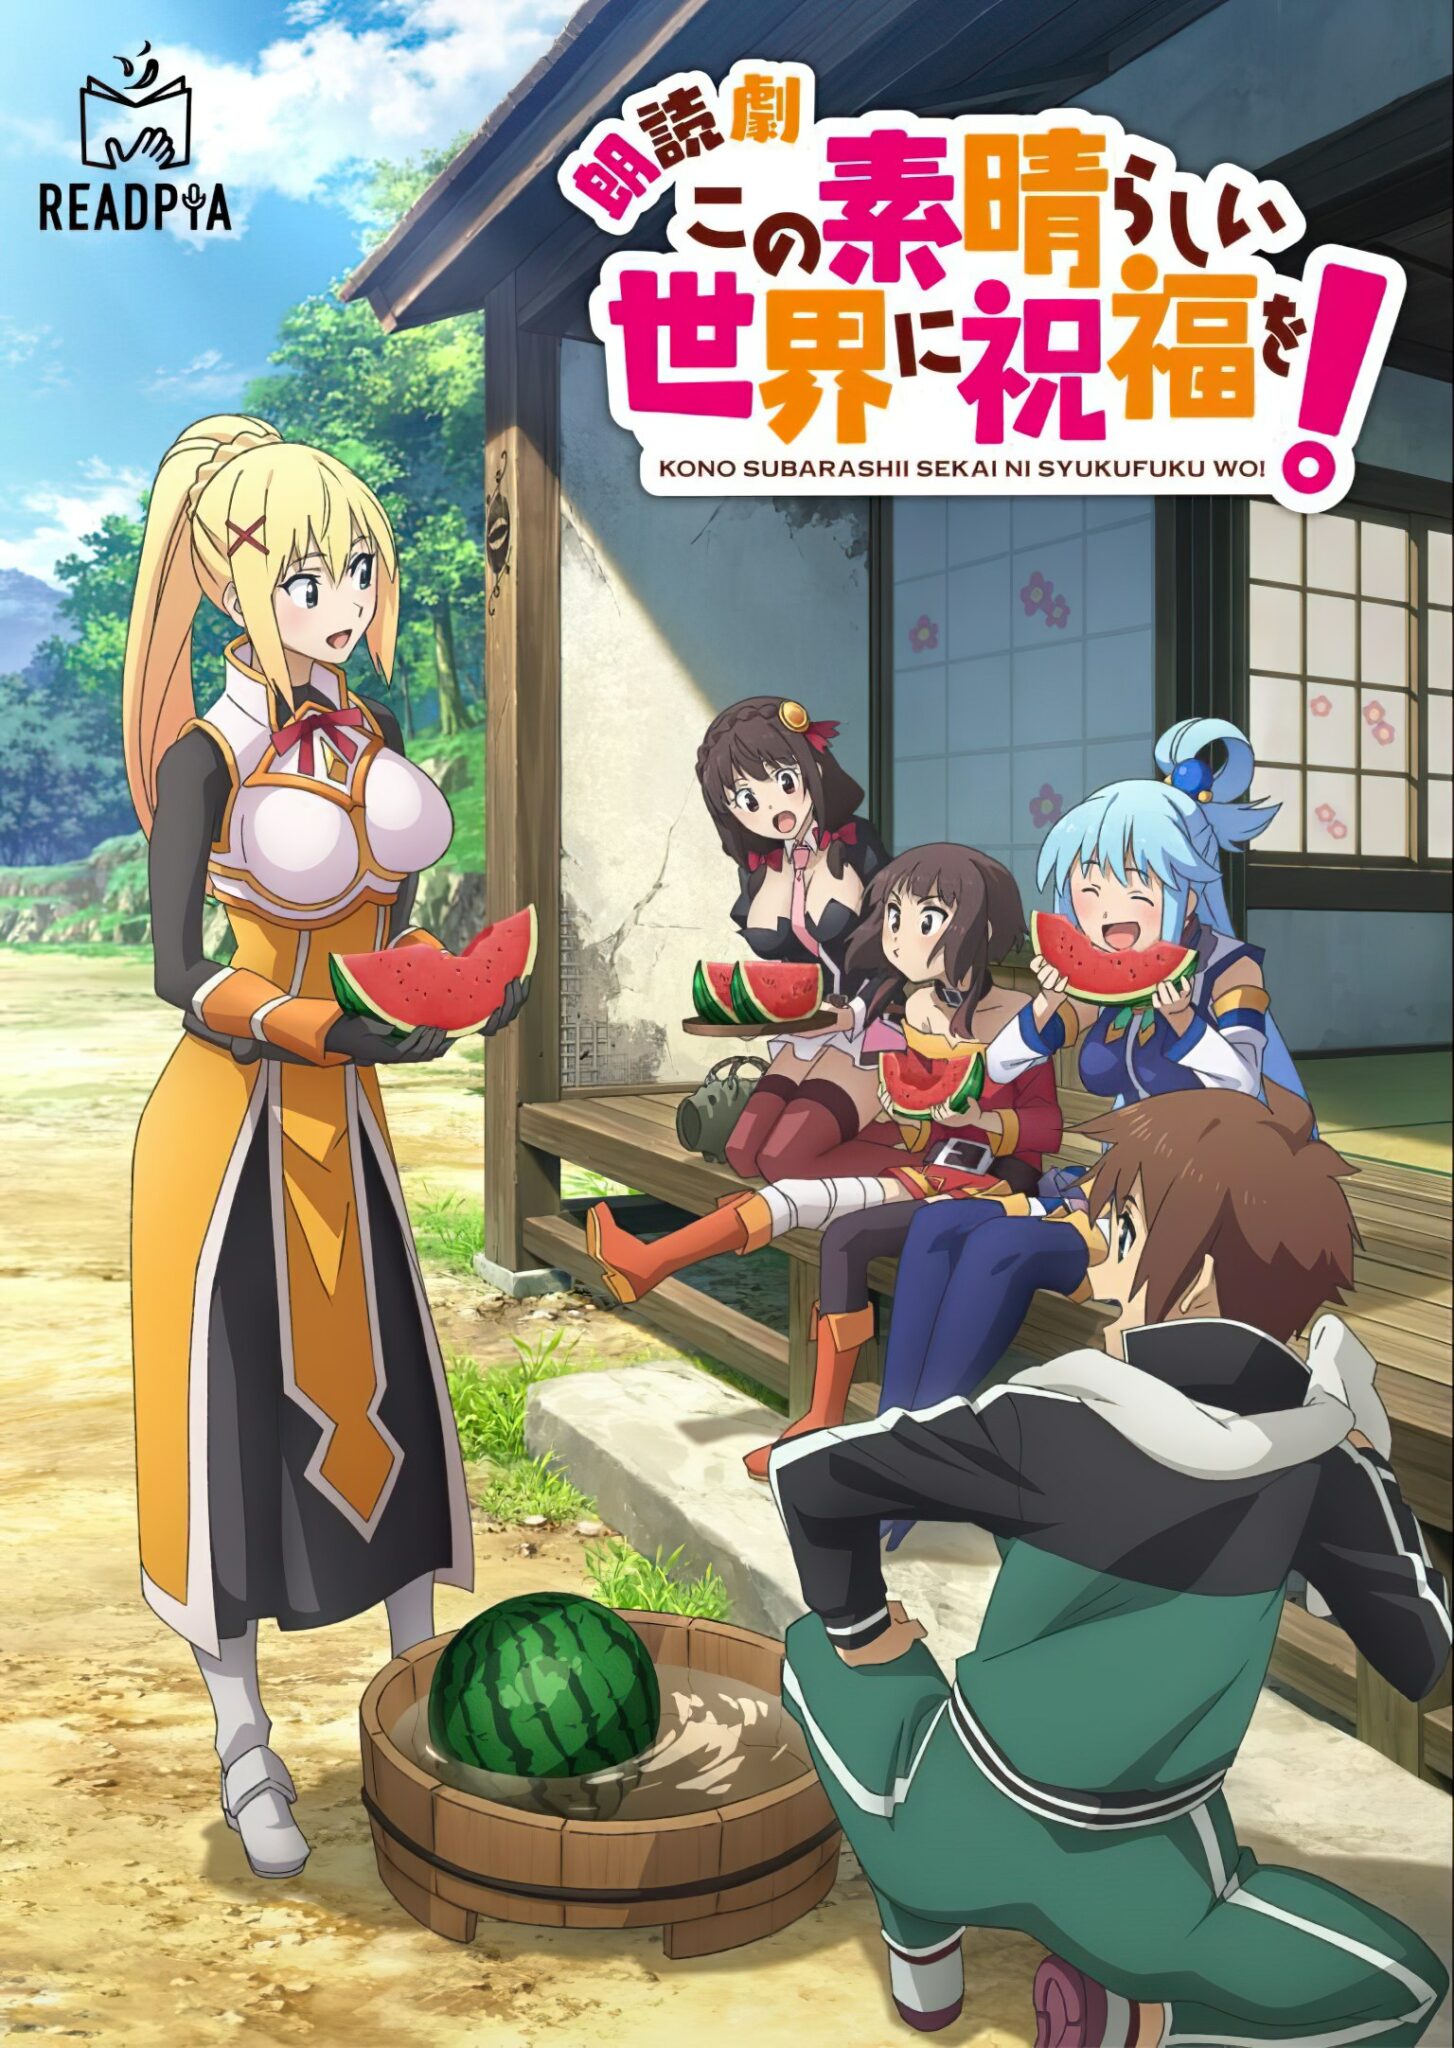 Subarashii Anime - Se reveló un nuevo video promocional para el